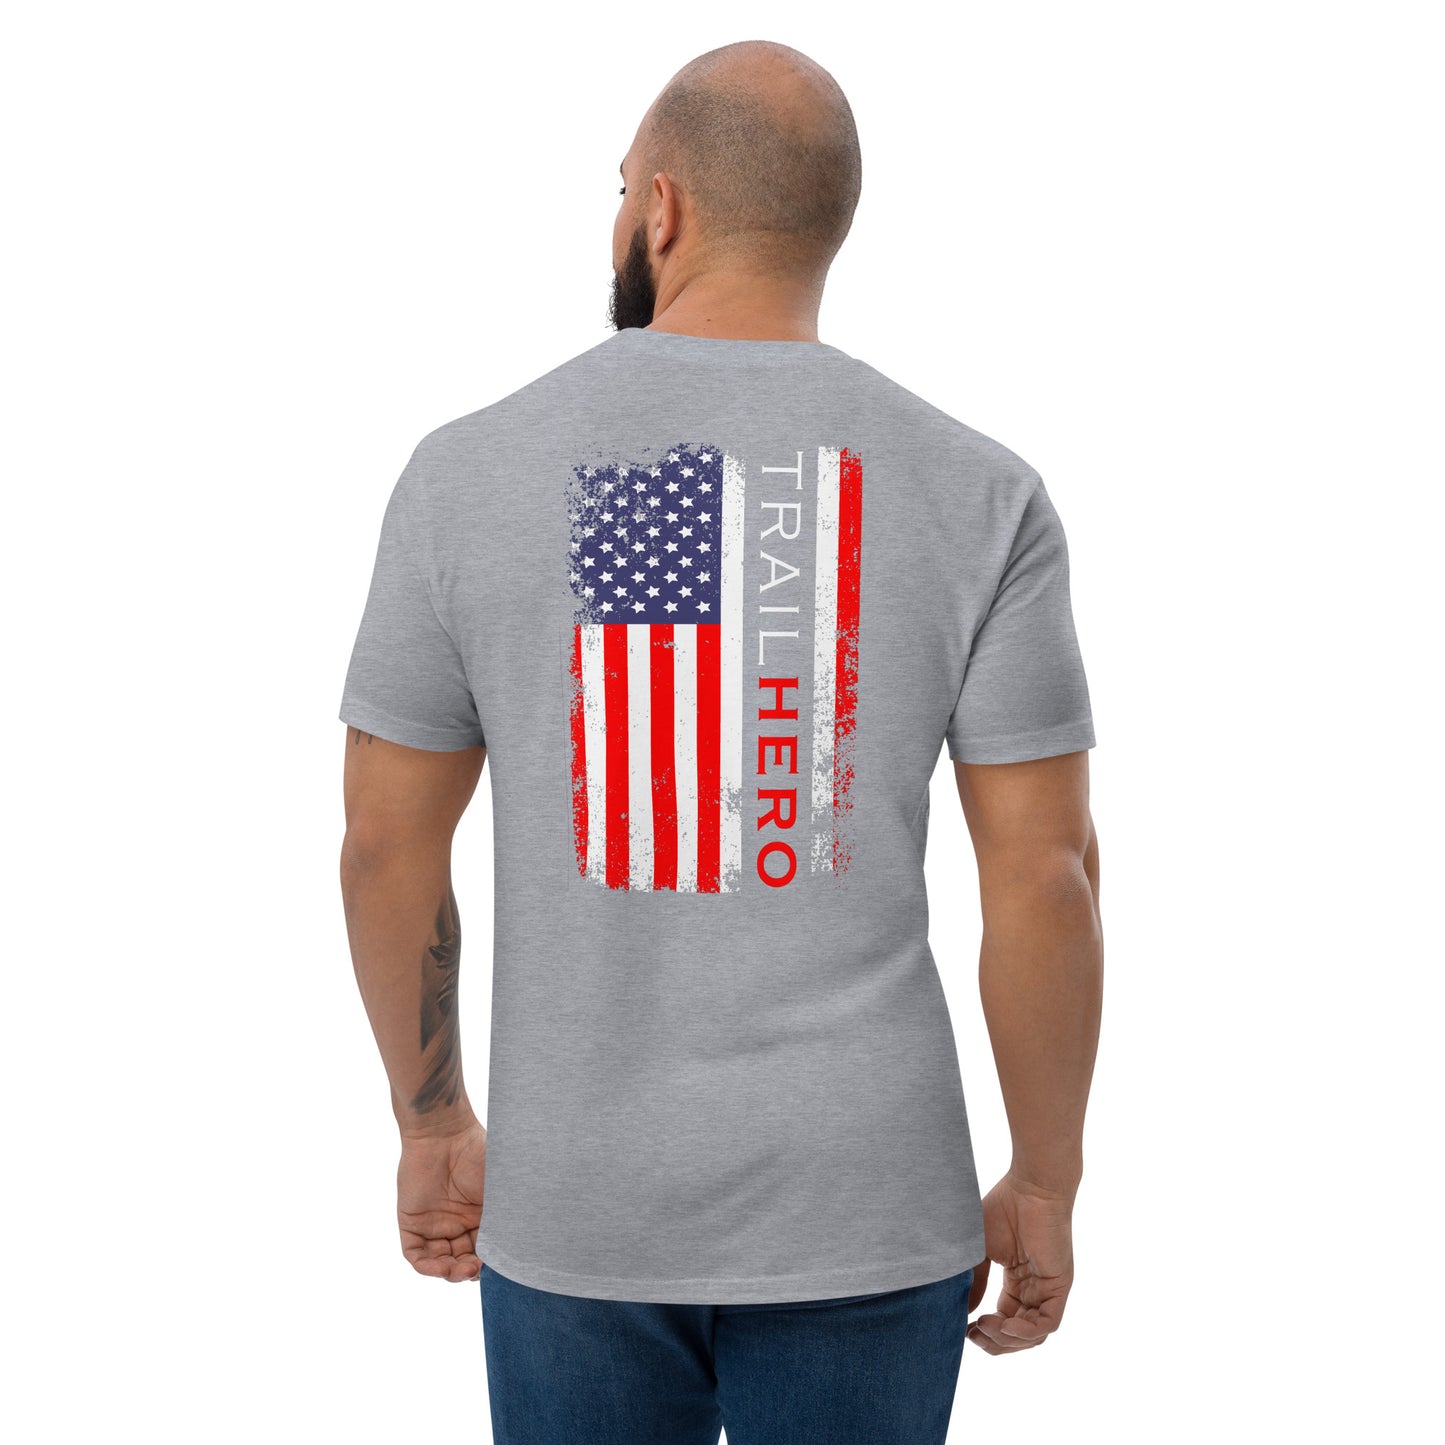 Trail Hero - Unisex - Full Color Flag - Pre-Shrunk 100% Cotton Next Level T-Shirt - 4 Colors